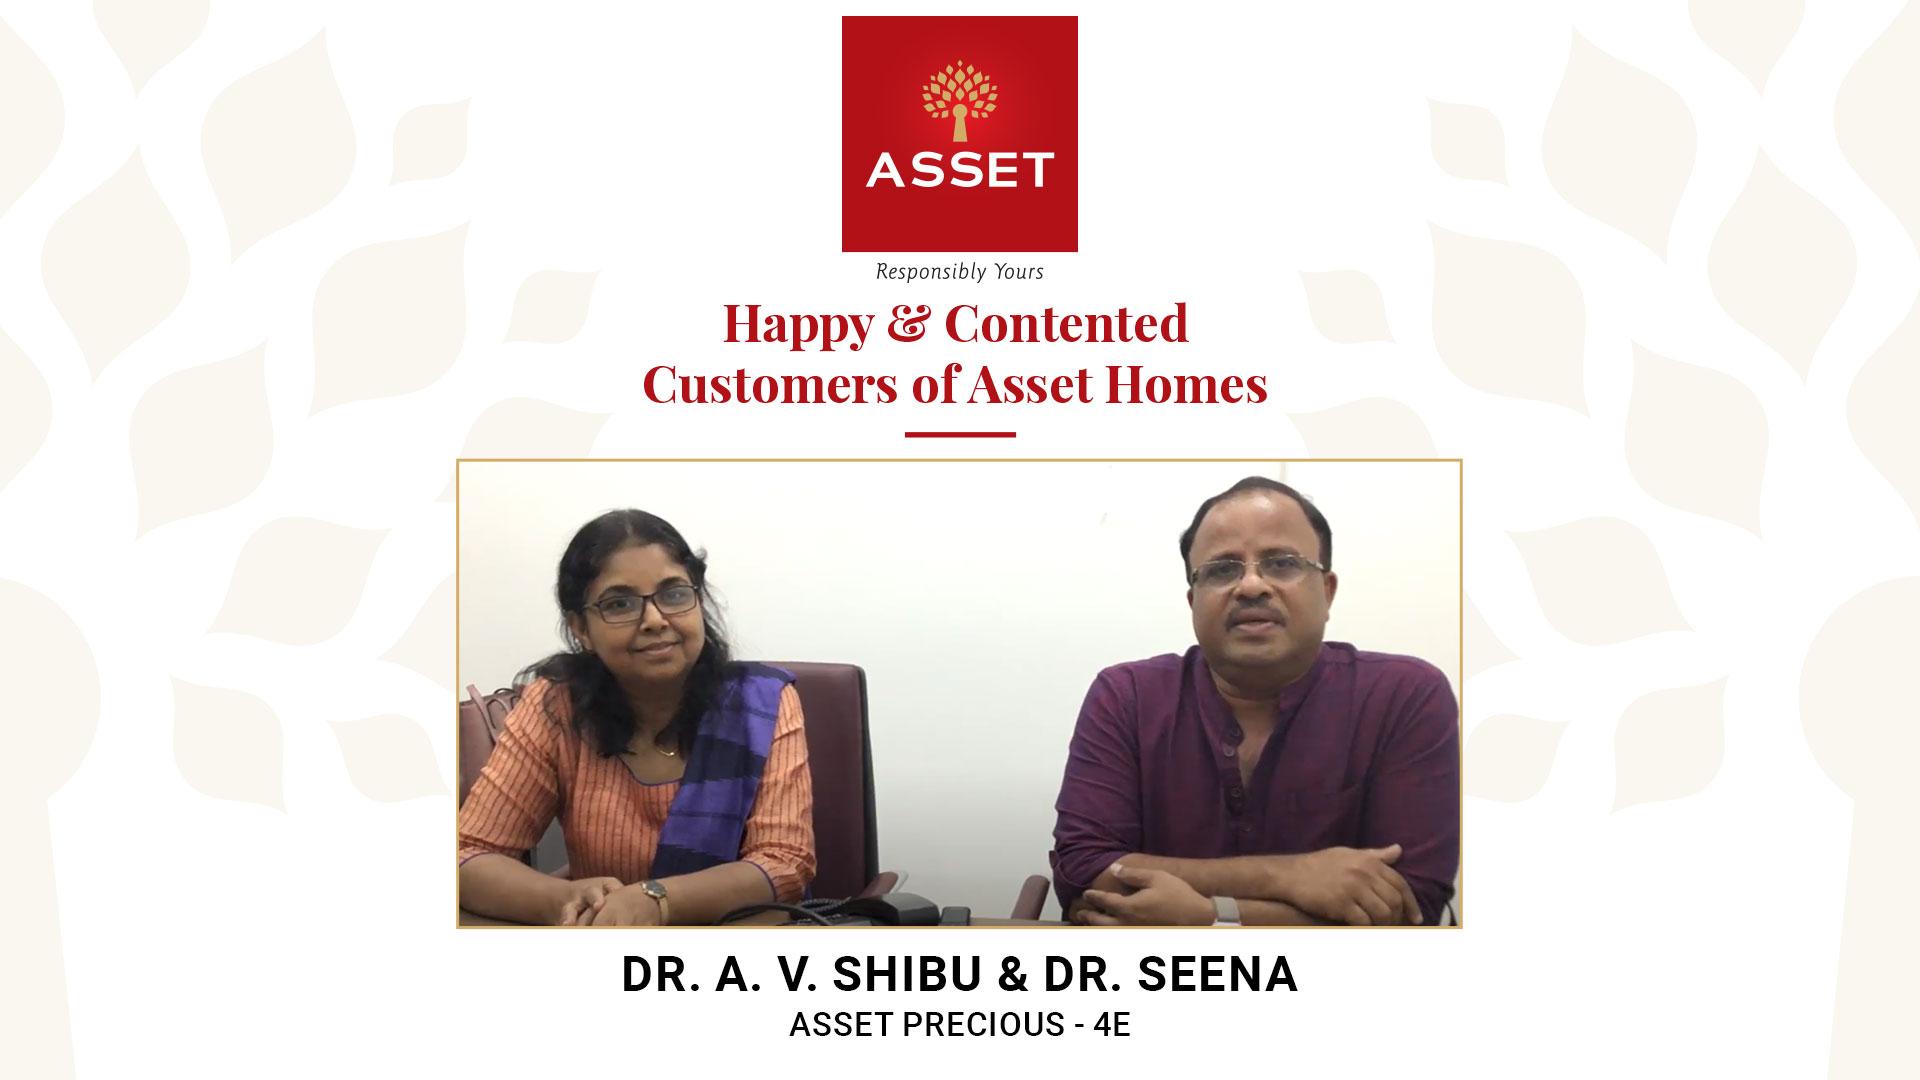 Dr. A V Shibu & Dr. Seena, Asset Precious 4E